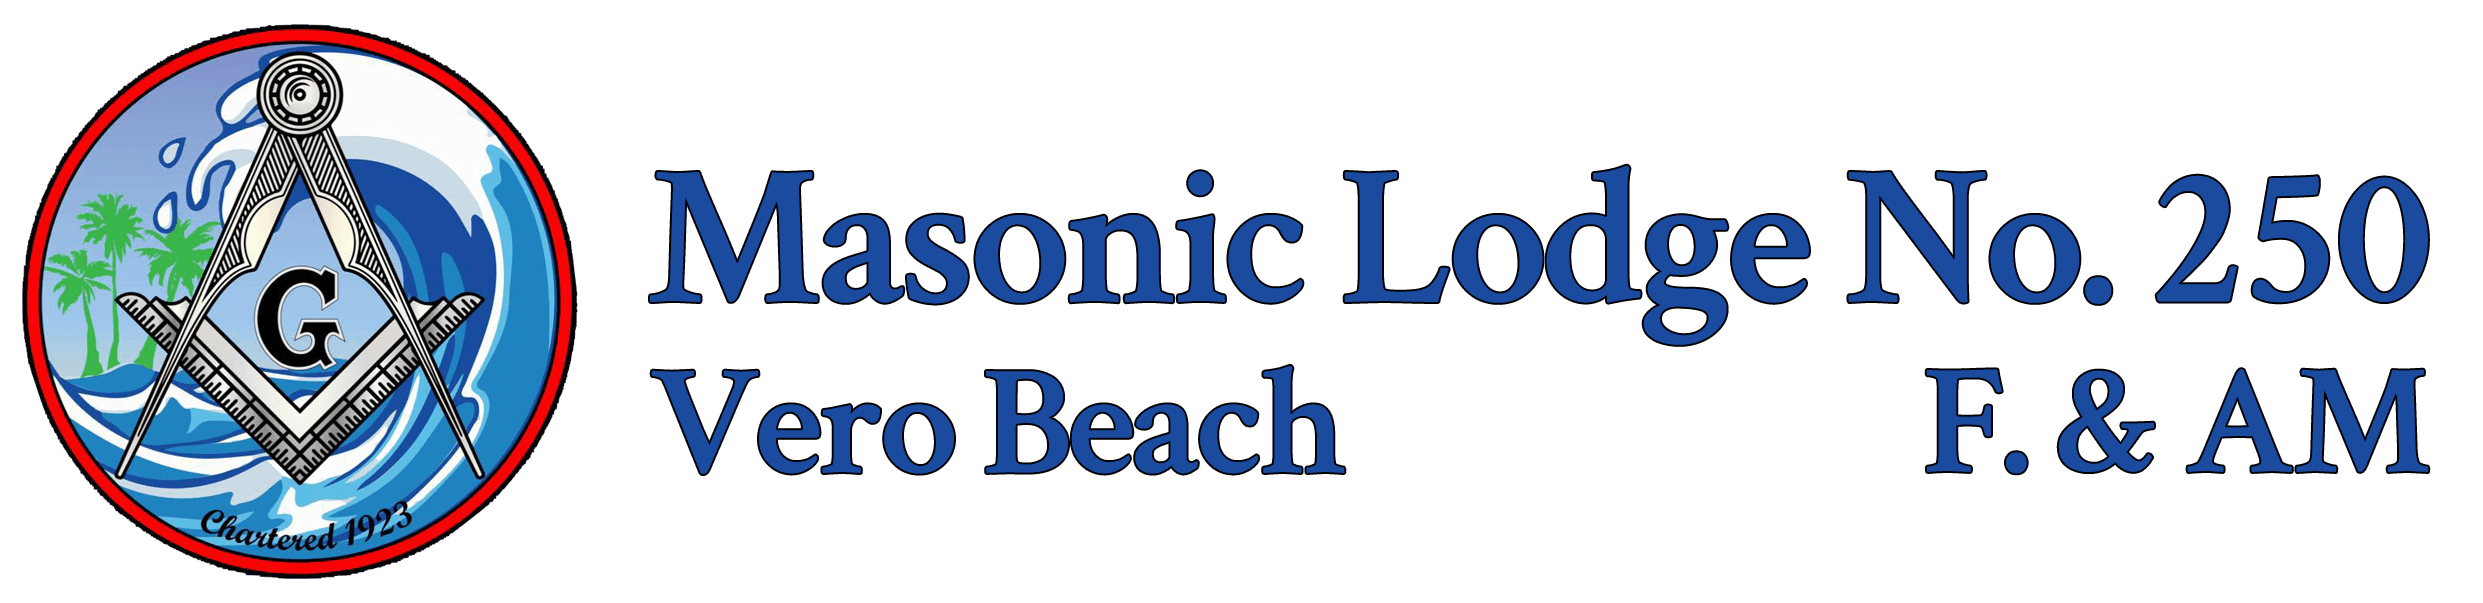 Vero Beach Masonic Lodge No. 250